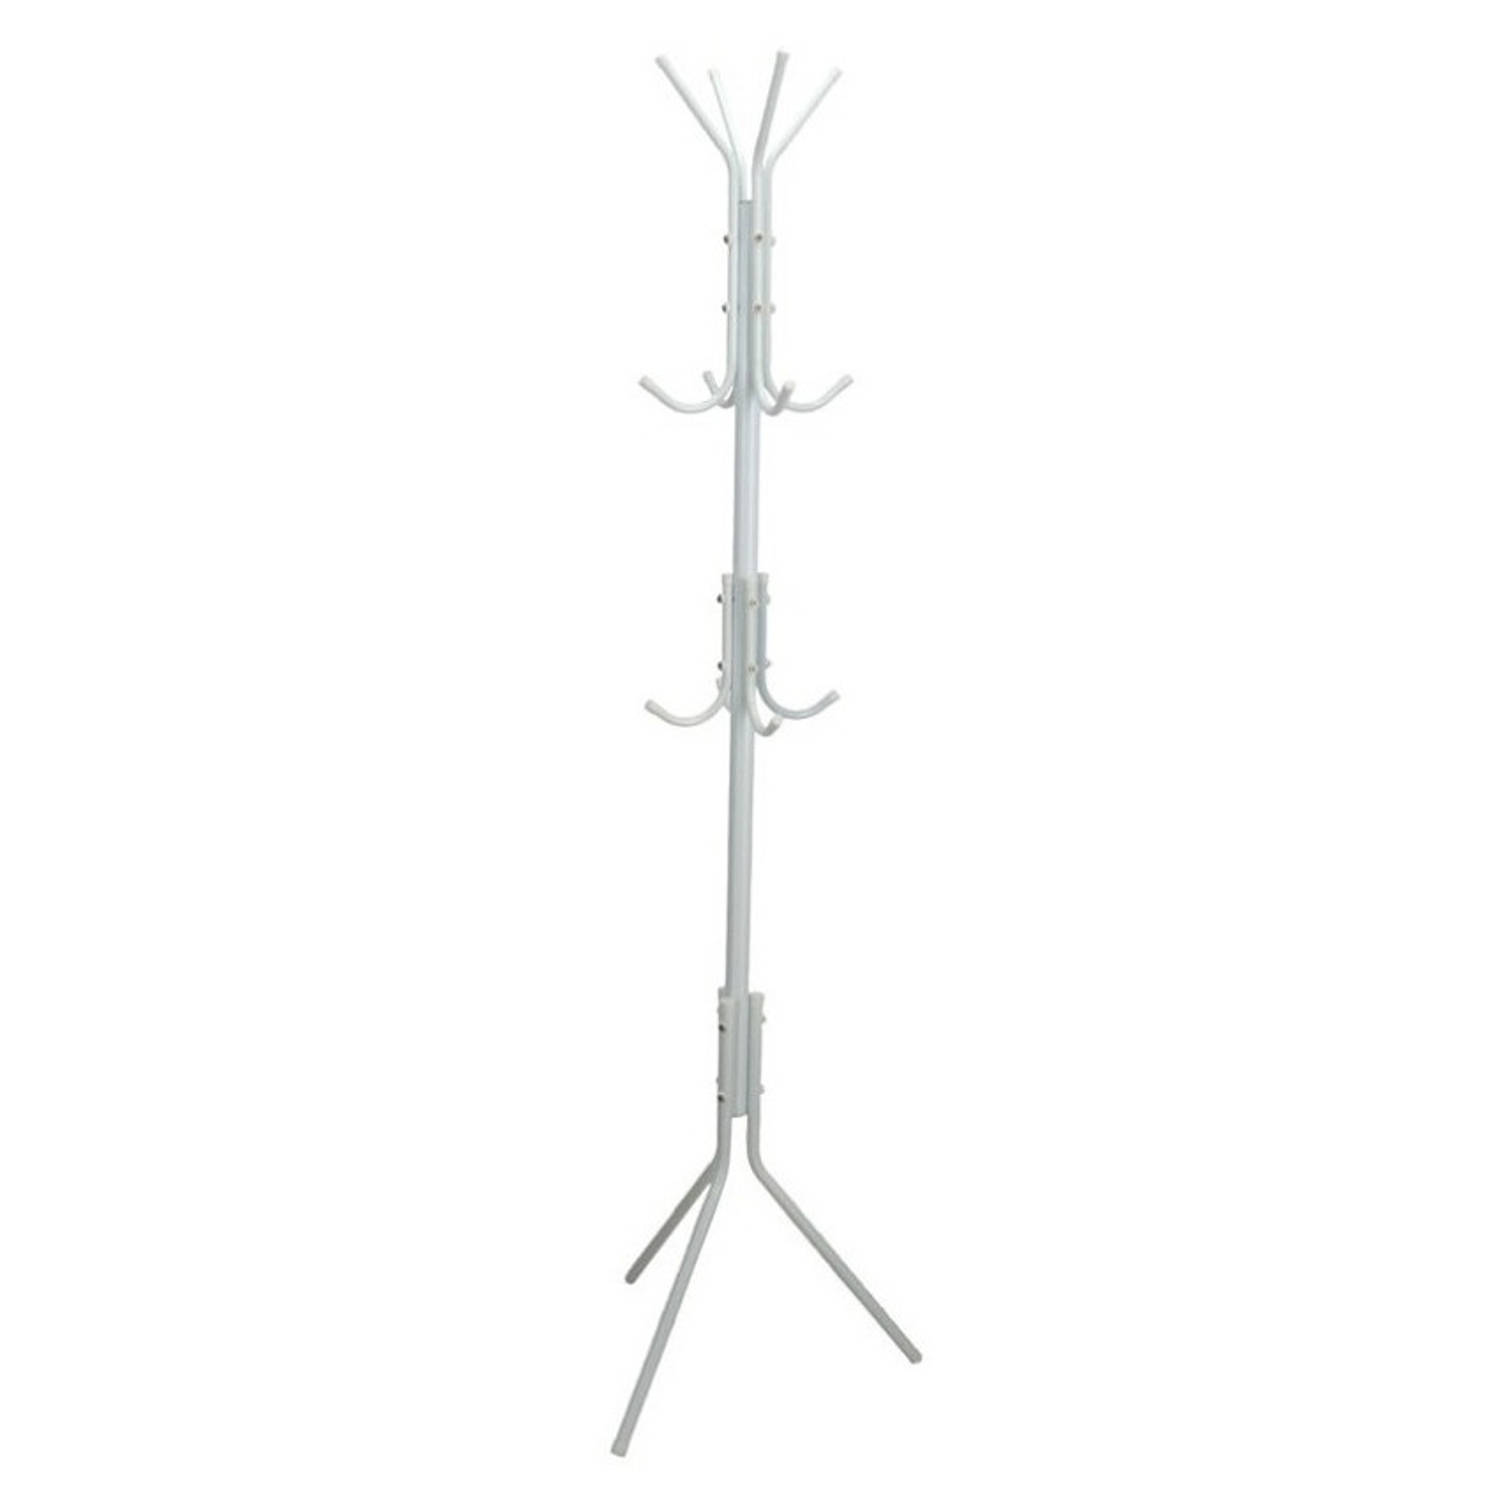 Gerimport - kapstok - wit - metaal - staand - 12 haken op 3 hoogtes - 170 cm - Kapstokken